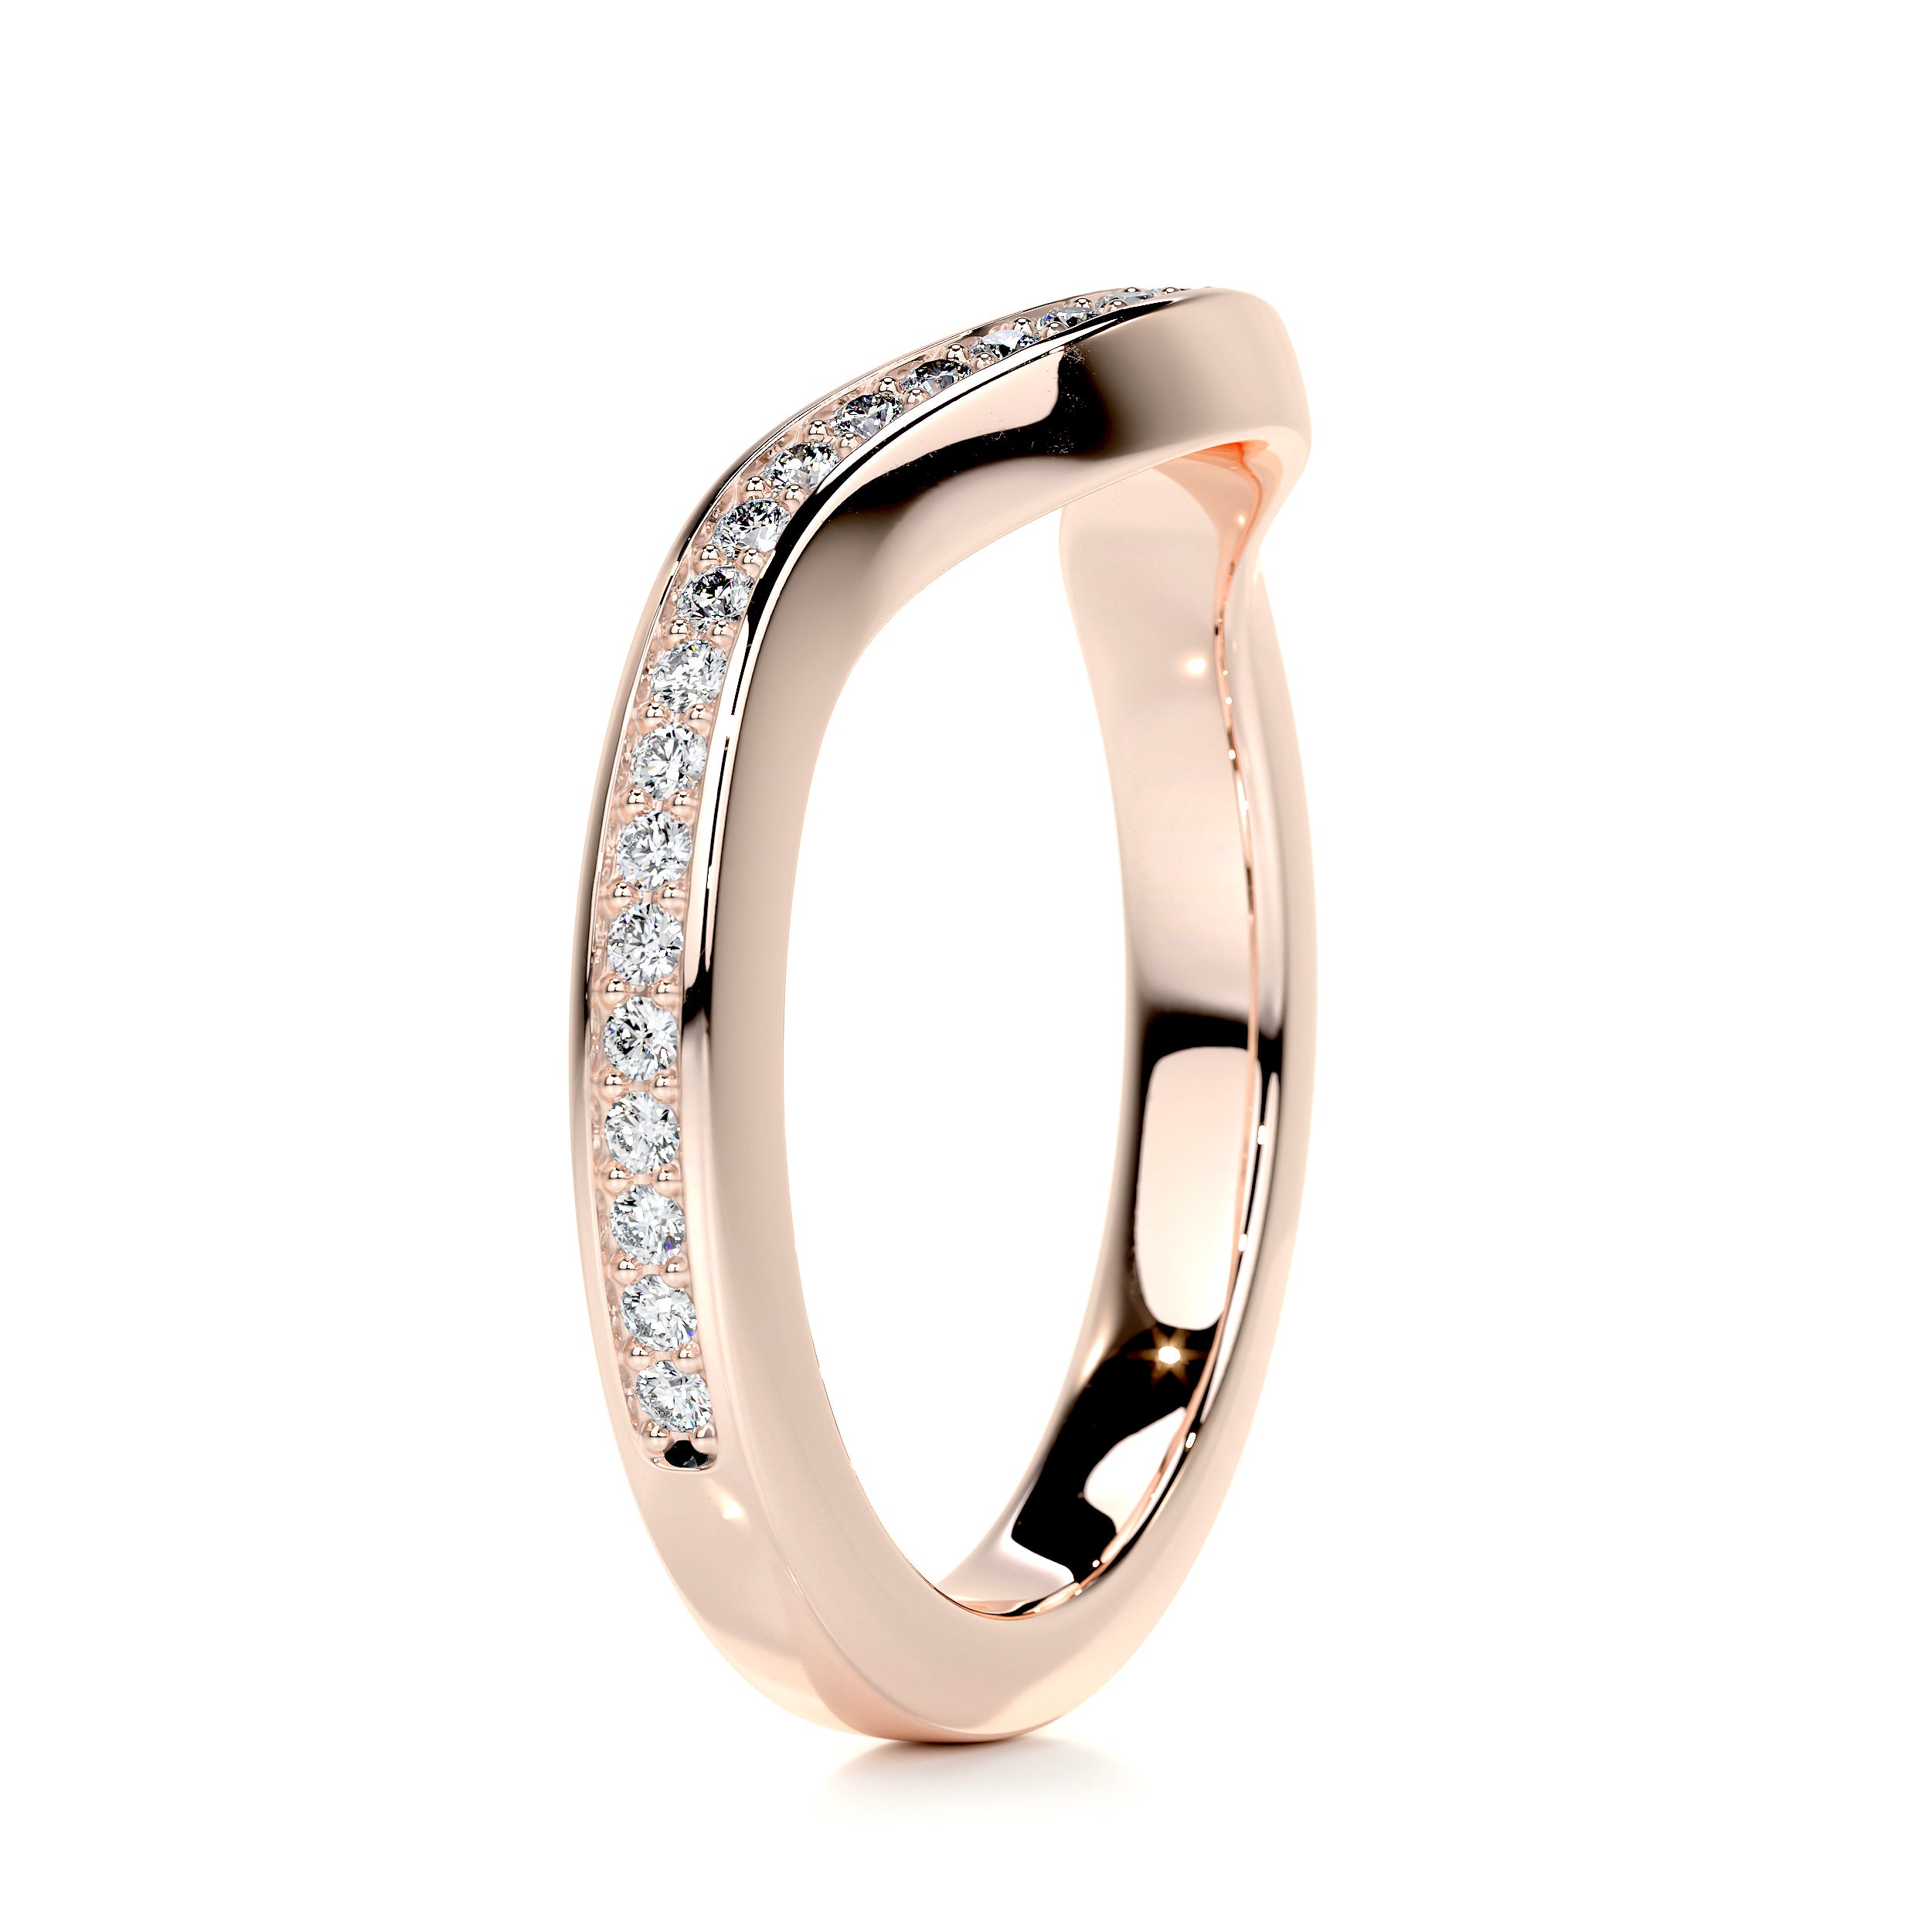 Lucy Diamond Wedding Ring   (0.30 Carat) -14K Rose Gold